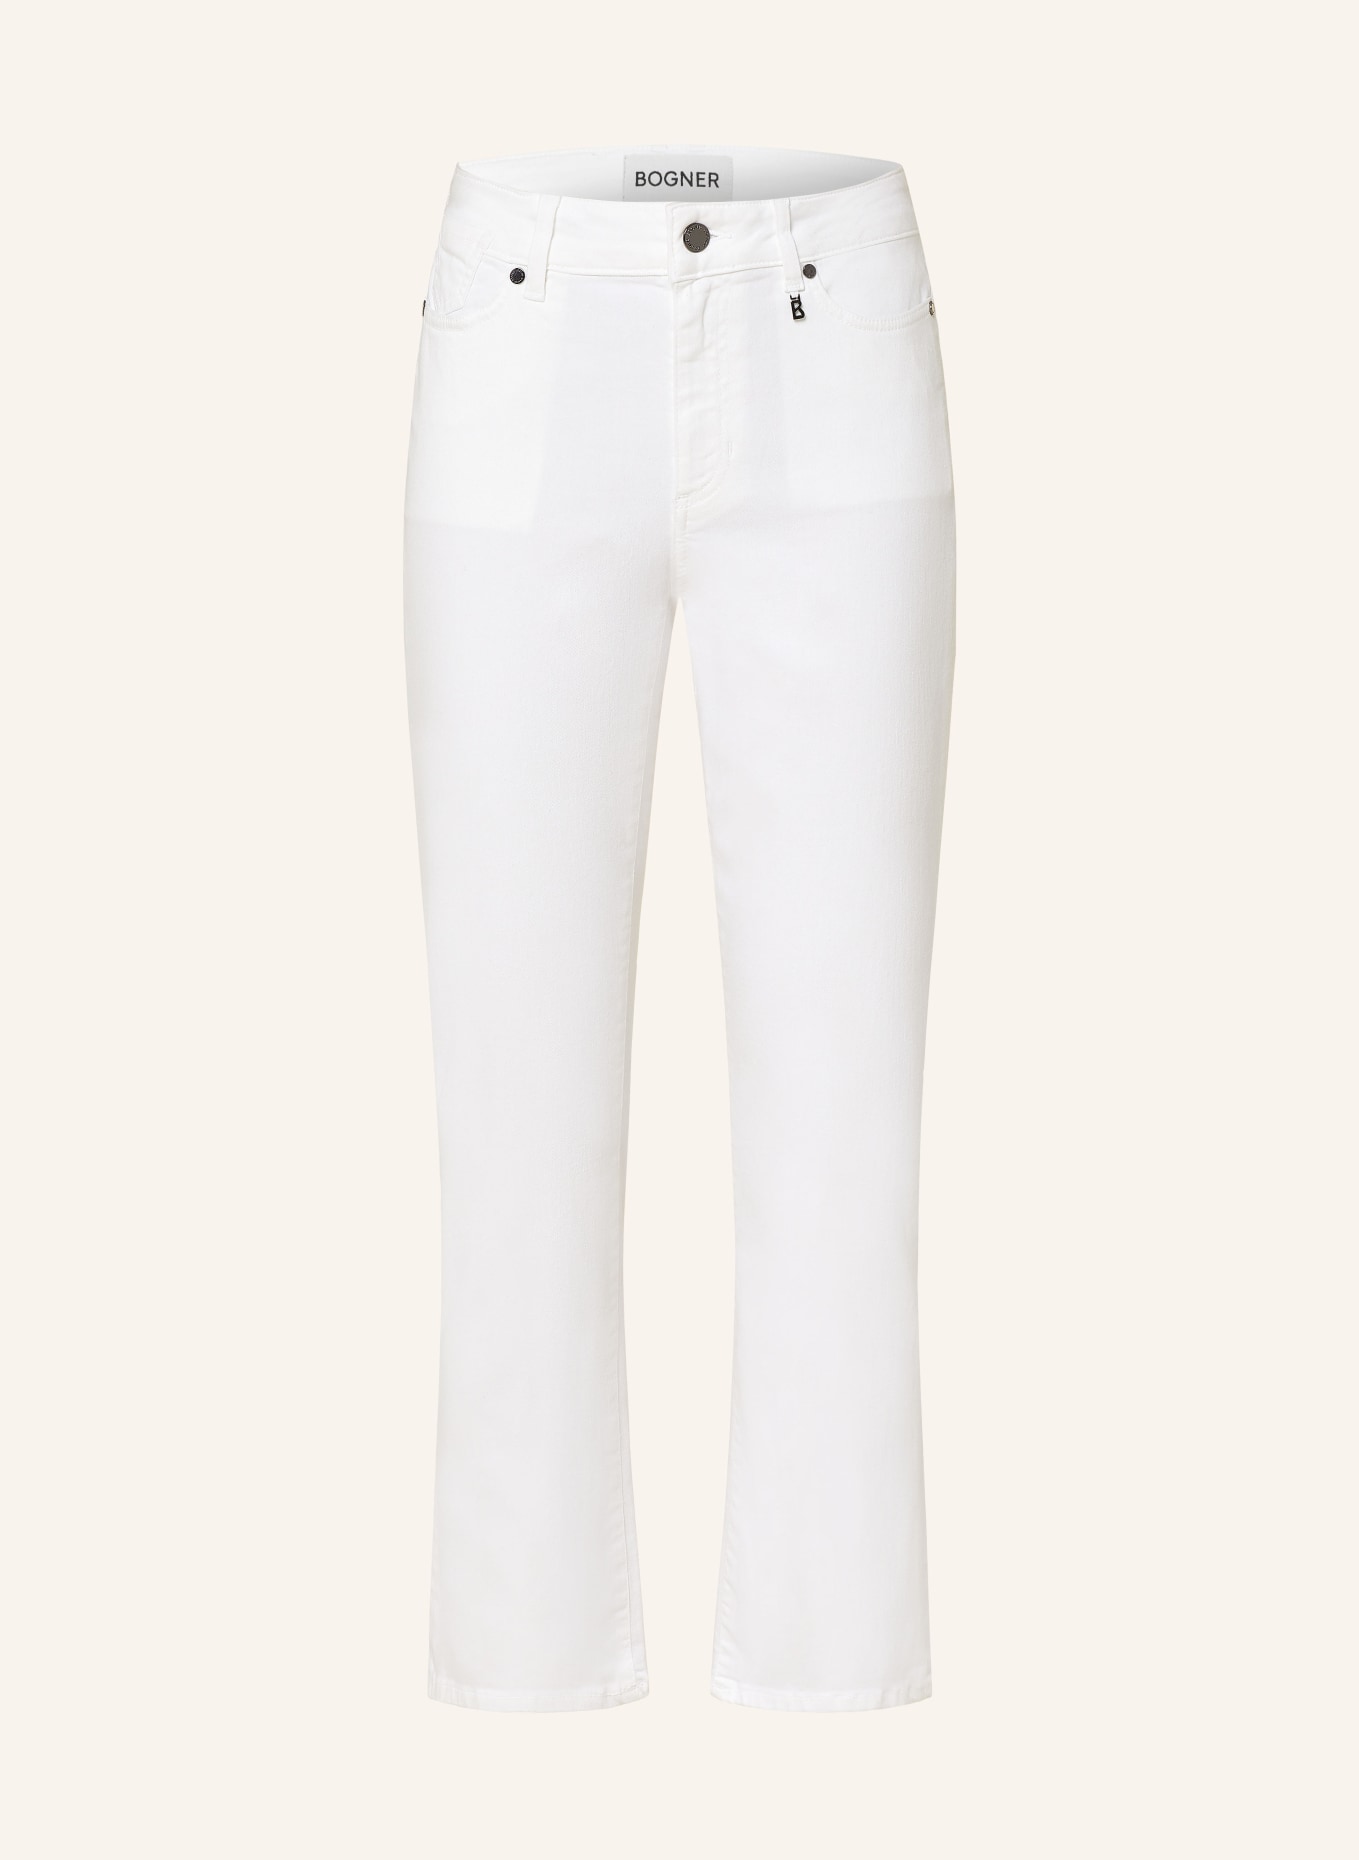 BOGNER 7/8 jeans JULIE-CF, Color: 031 White (Image 1)